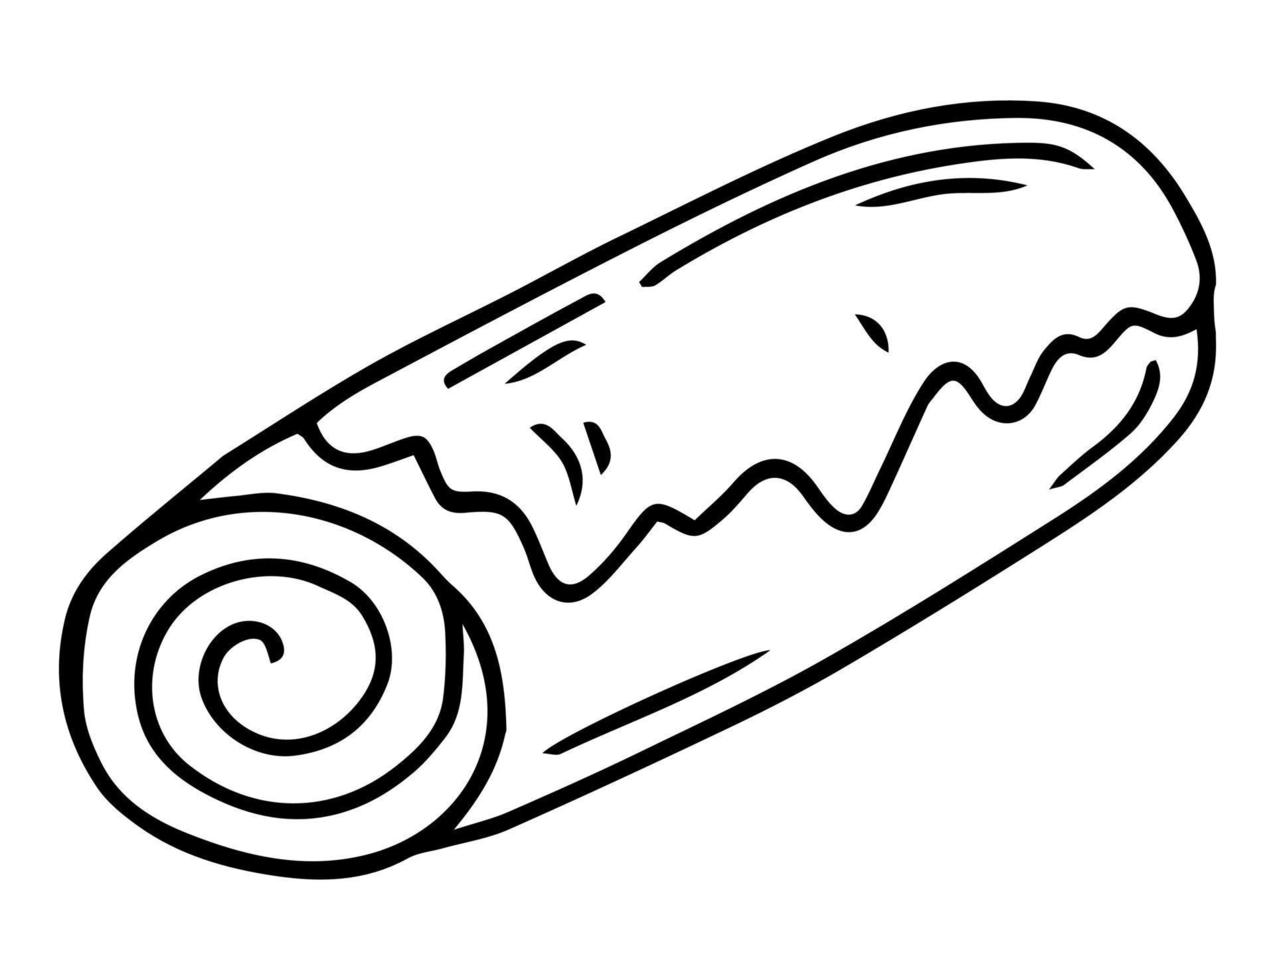 bolo de semente de papoula desenhado à mão ou strudel isolado no branco. pão ou rolo recheado com sementes de papoula ou canela. esboço de pastelaria gravada. ilustração em vetor de sobremesa tradicional polonesa. bolo de Natal